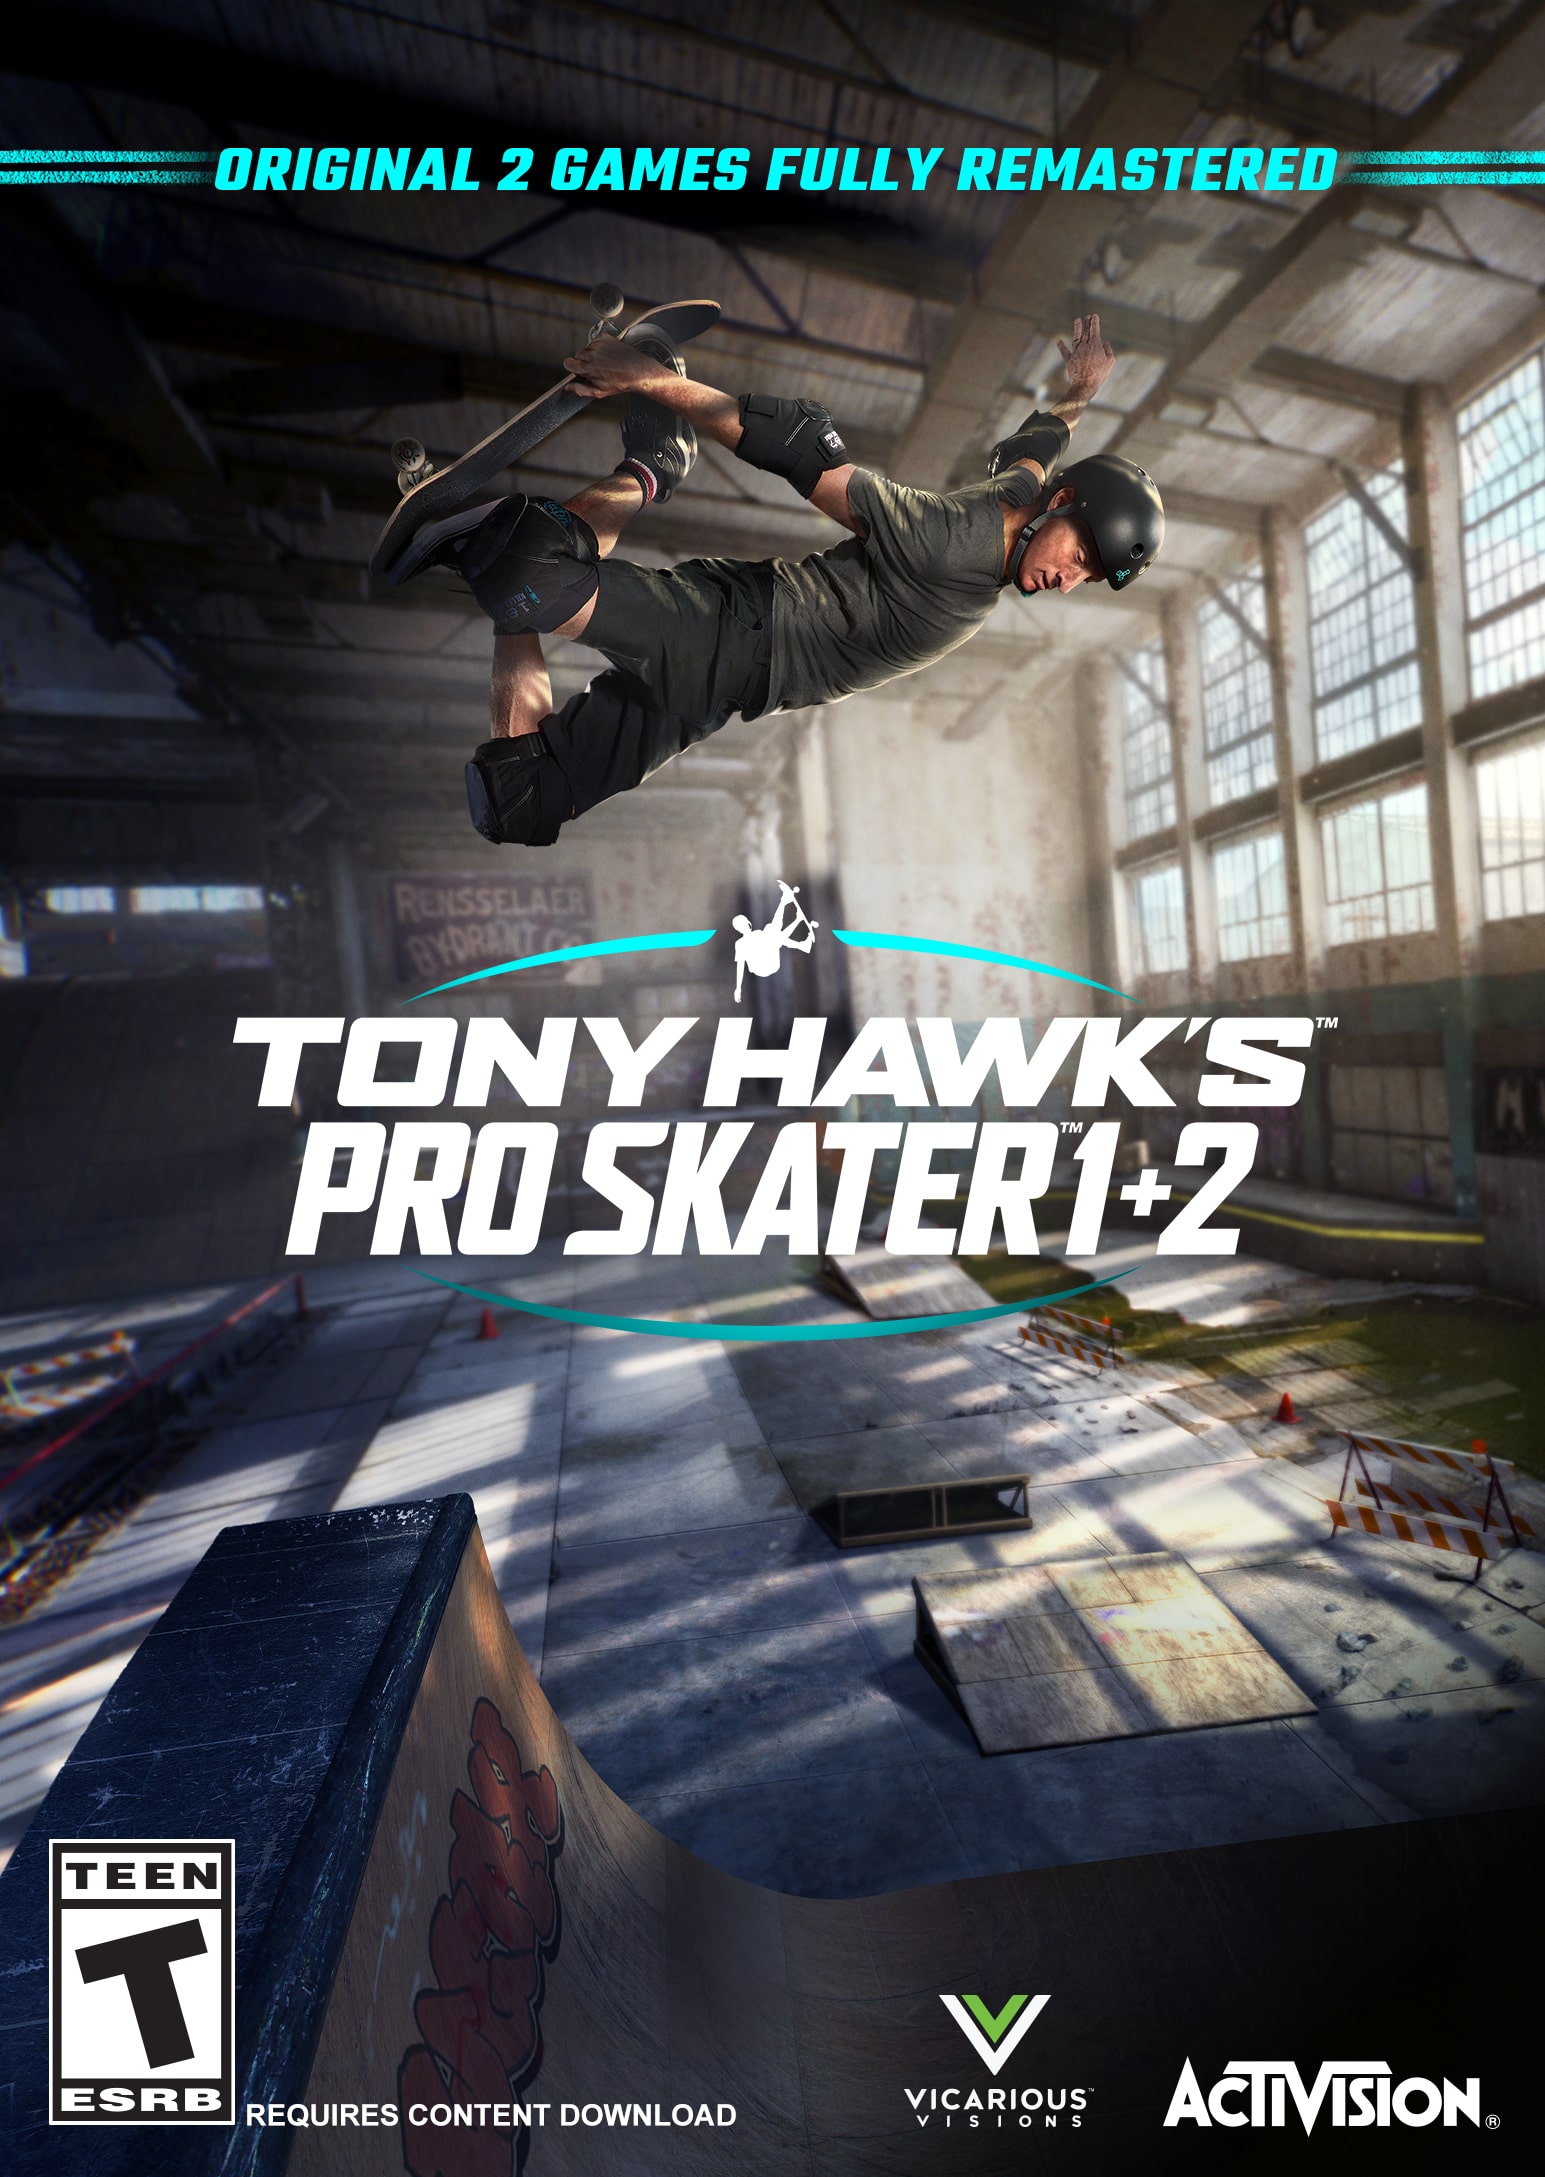 Play Tony Hawk's™ Pro Skater™ 1 + 2 with the Actual Tony Hawk